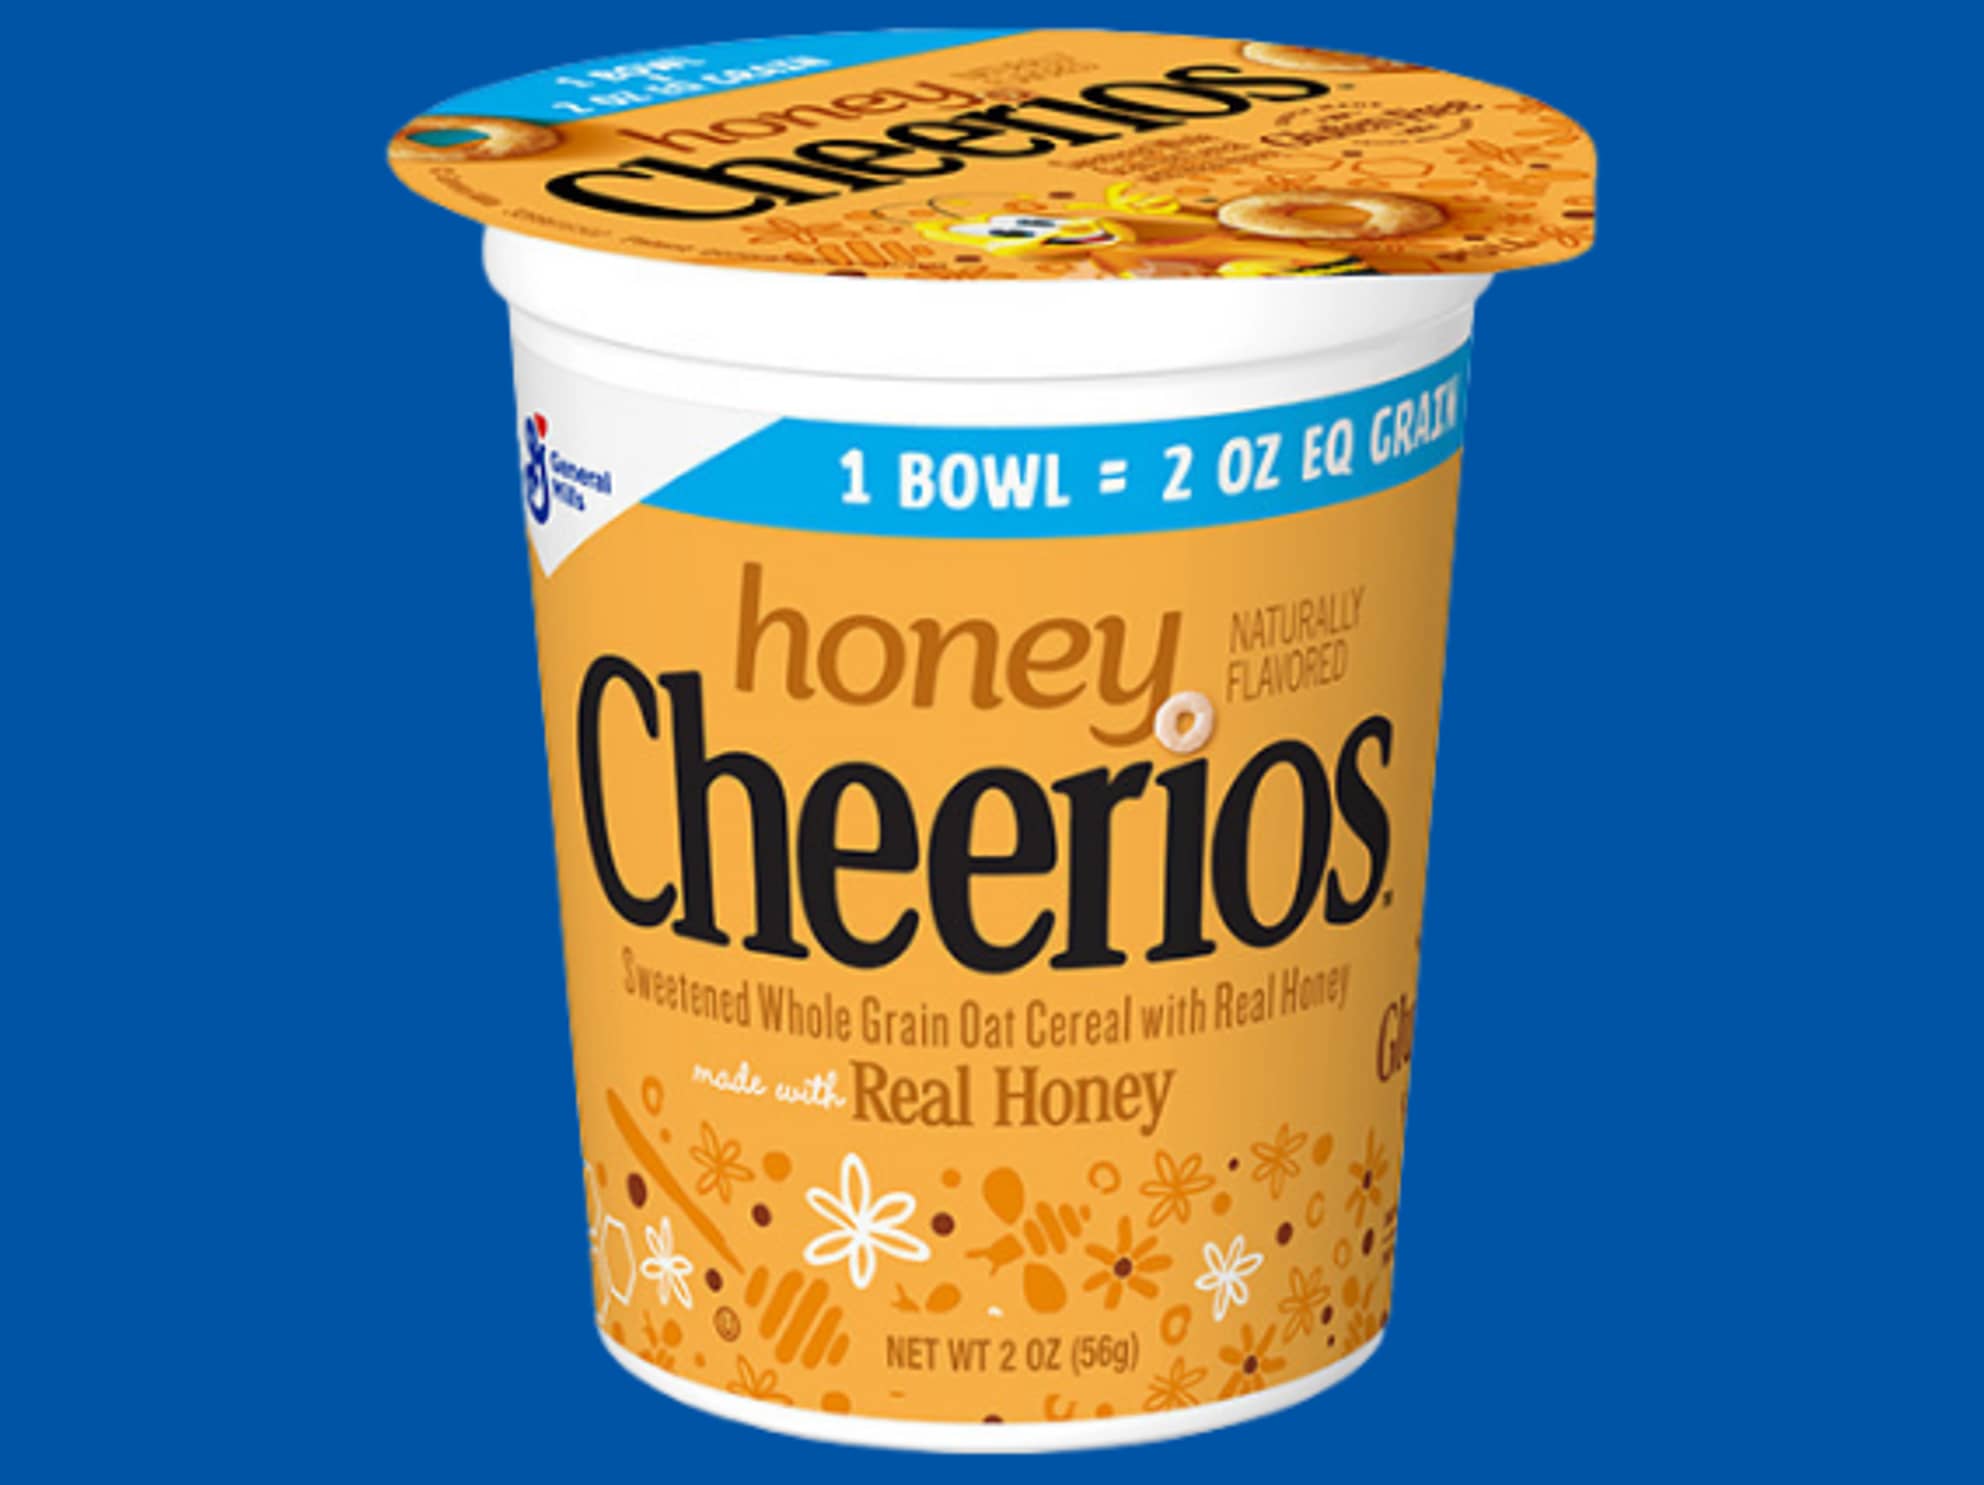 honey cheerios